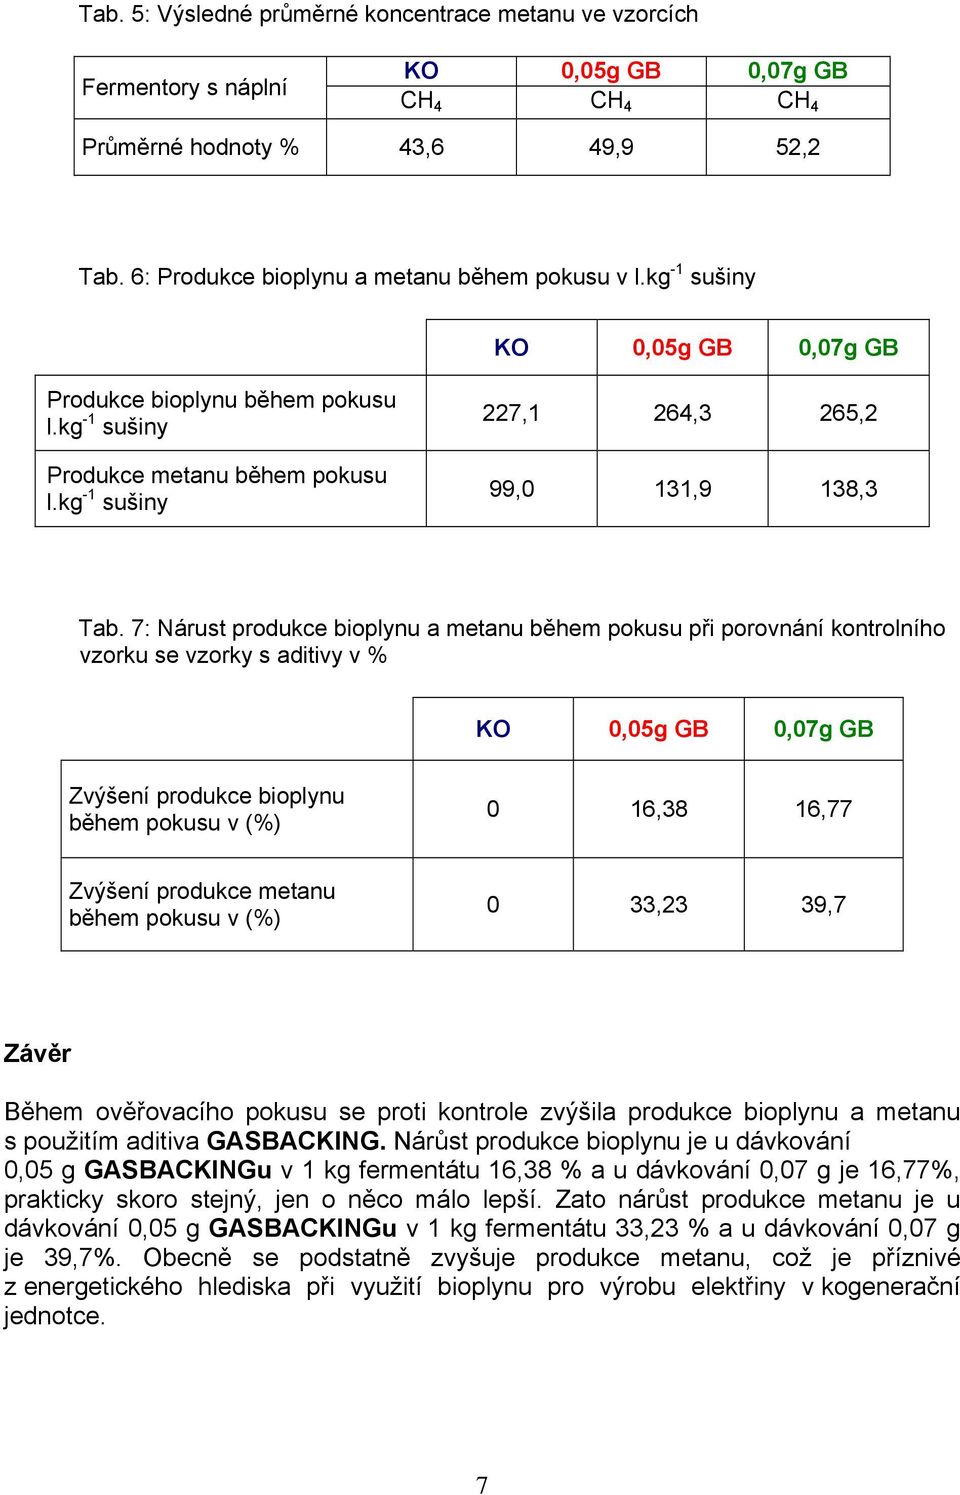 7: Nárust produkce bioplynu a metanu během pokusu při porovnání kontrolního vzorku se vzorky s aditivy v % KO 0,05g GB 0,07g GB Zvýšení produkce bioplynu během pokusu v (%) 0 16,38 16,77 Zvýšení